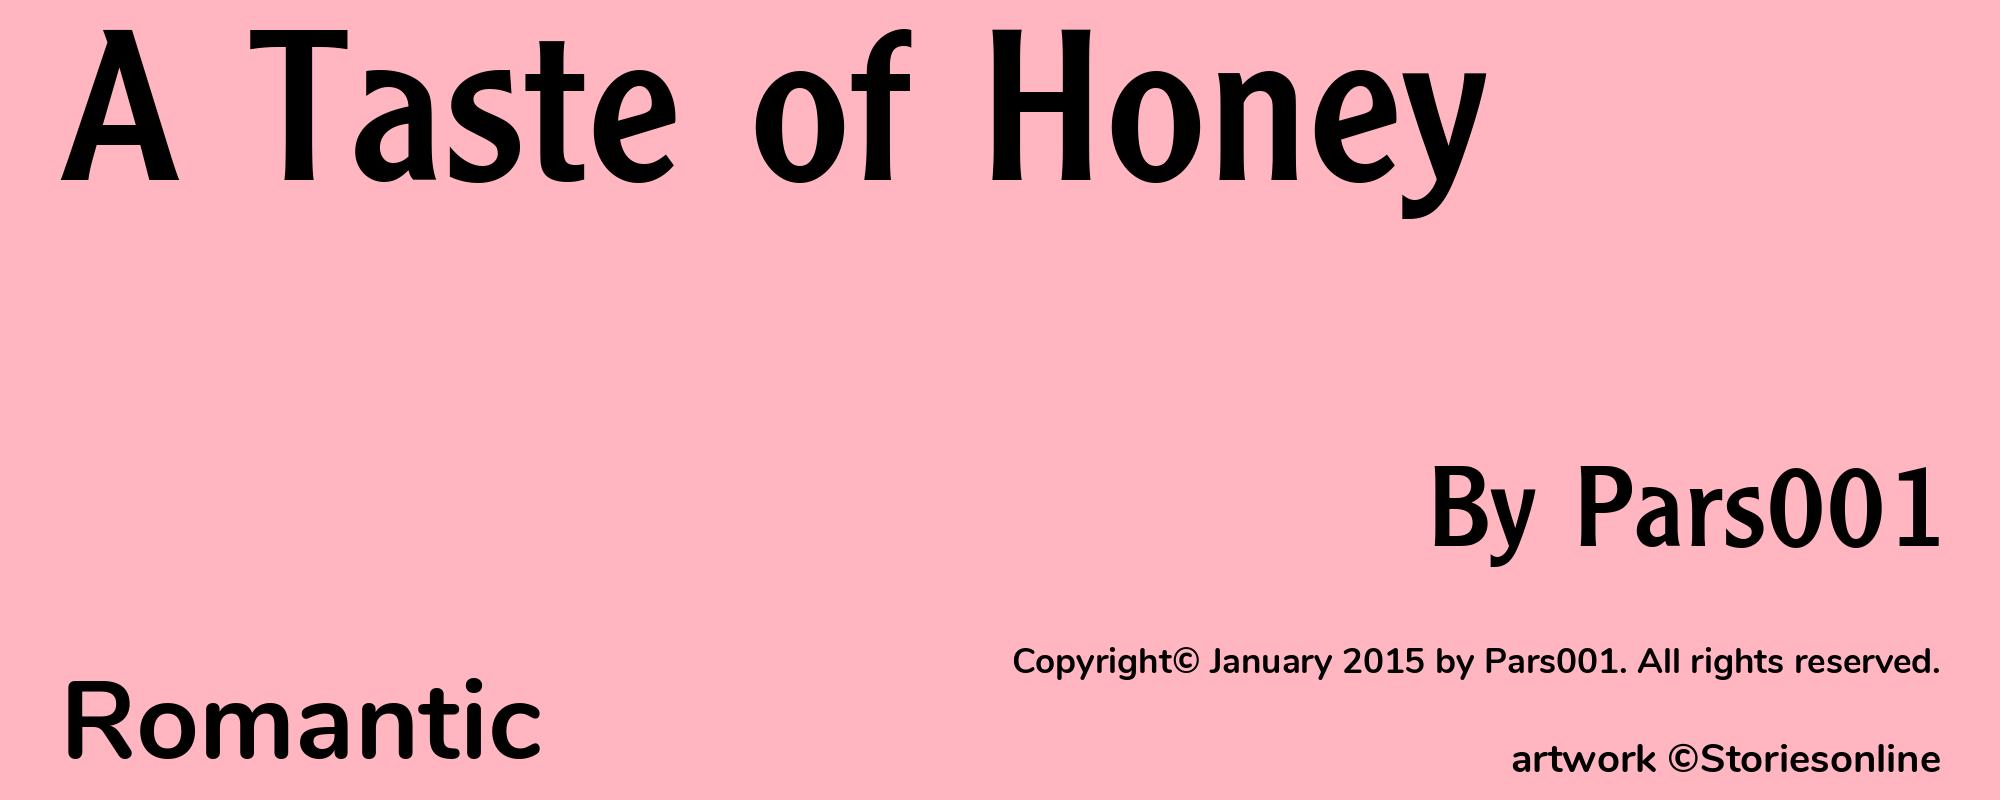 A Taste of Honey - Cover